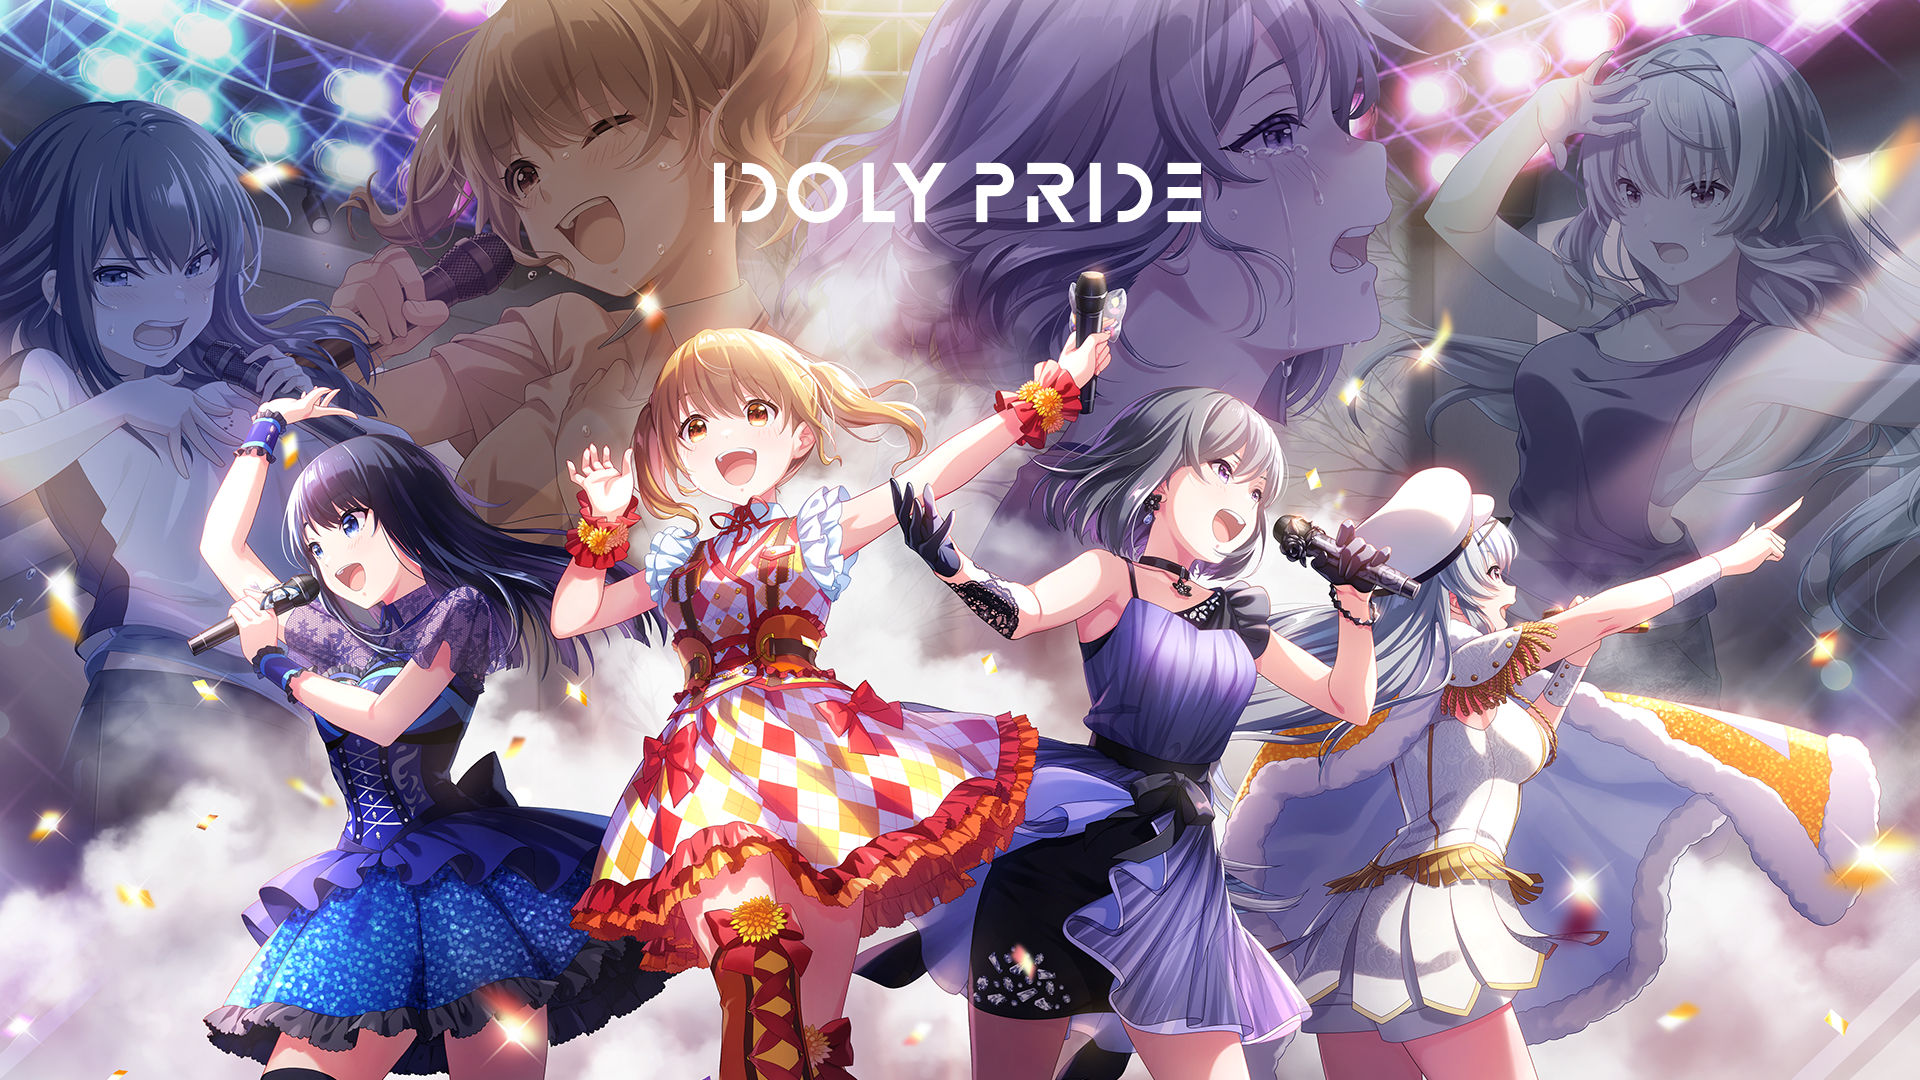 偶像经营管理 rpg 游戏《idoly pride》宣布将在 6 月